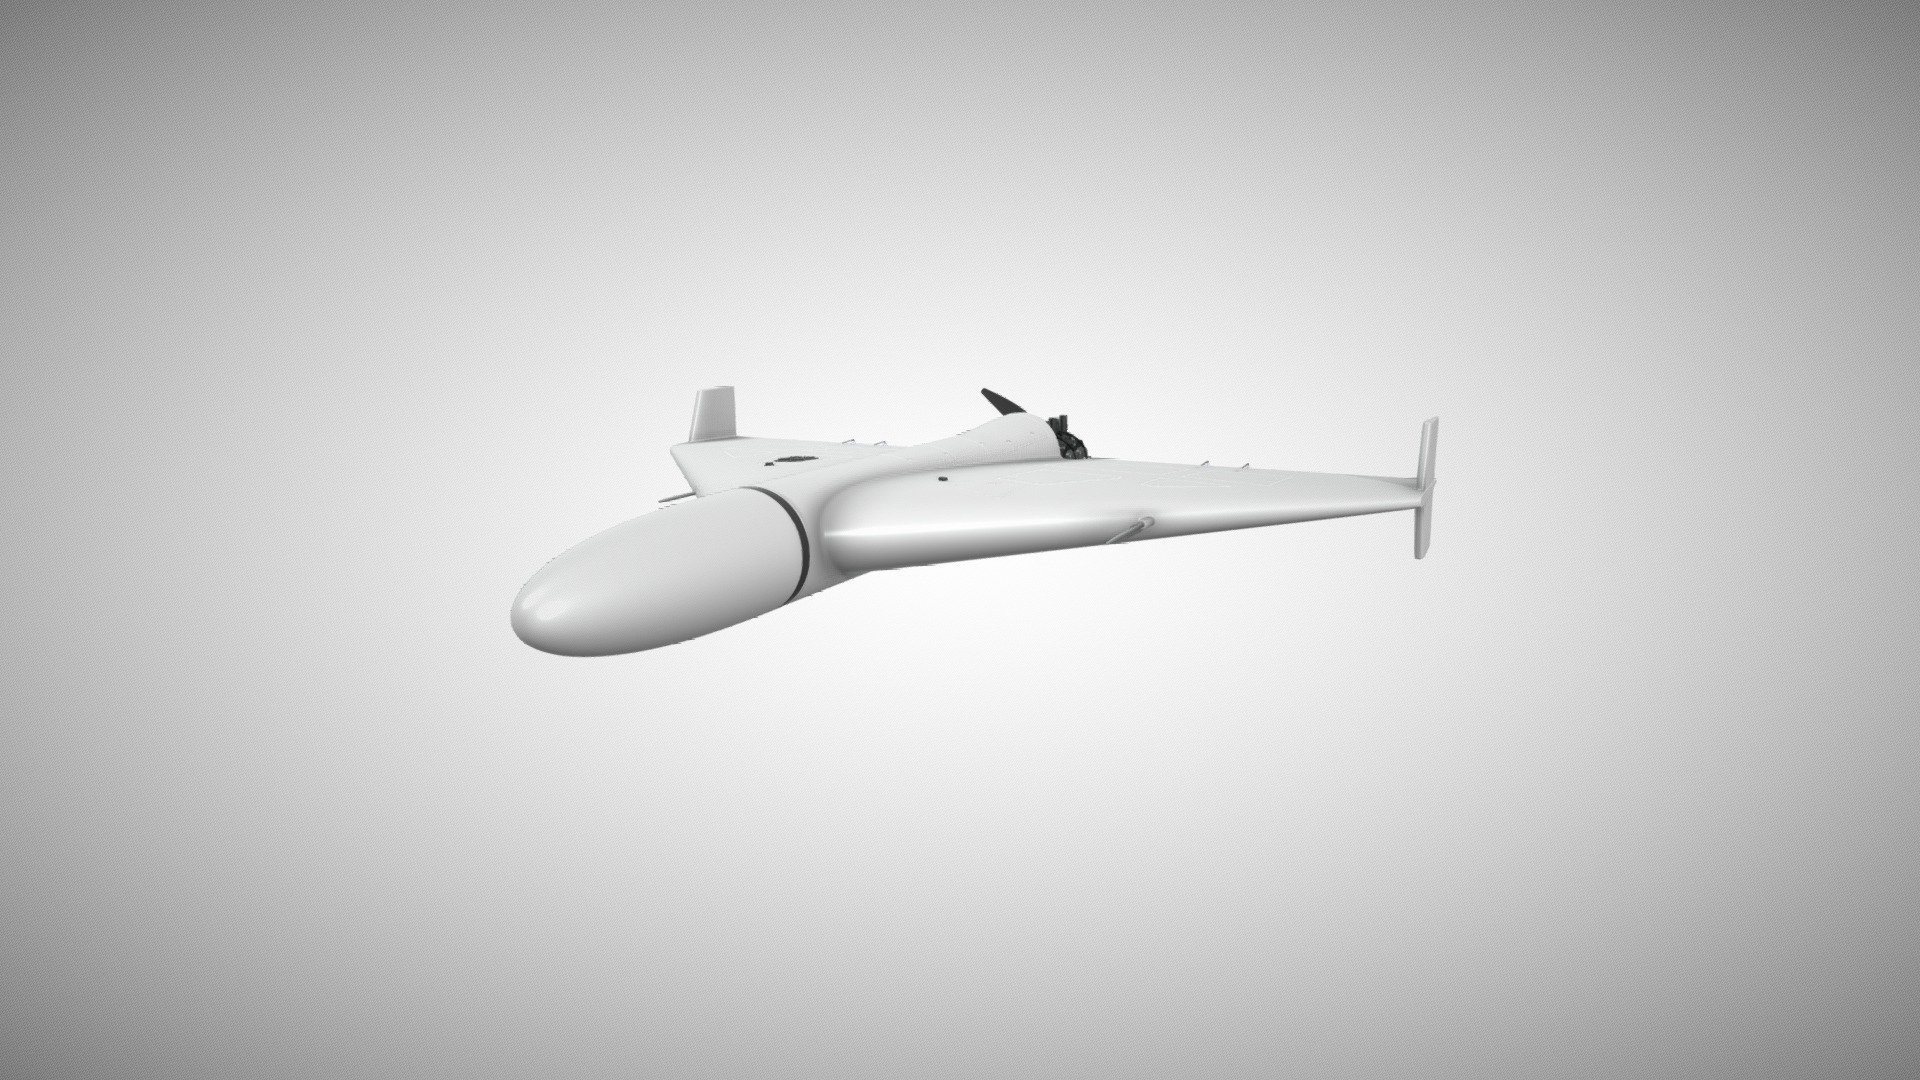 3D model of Geran 2 drone 3d model